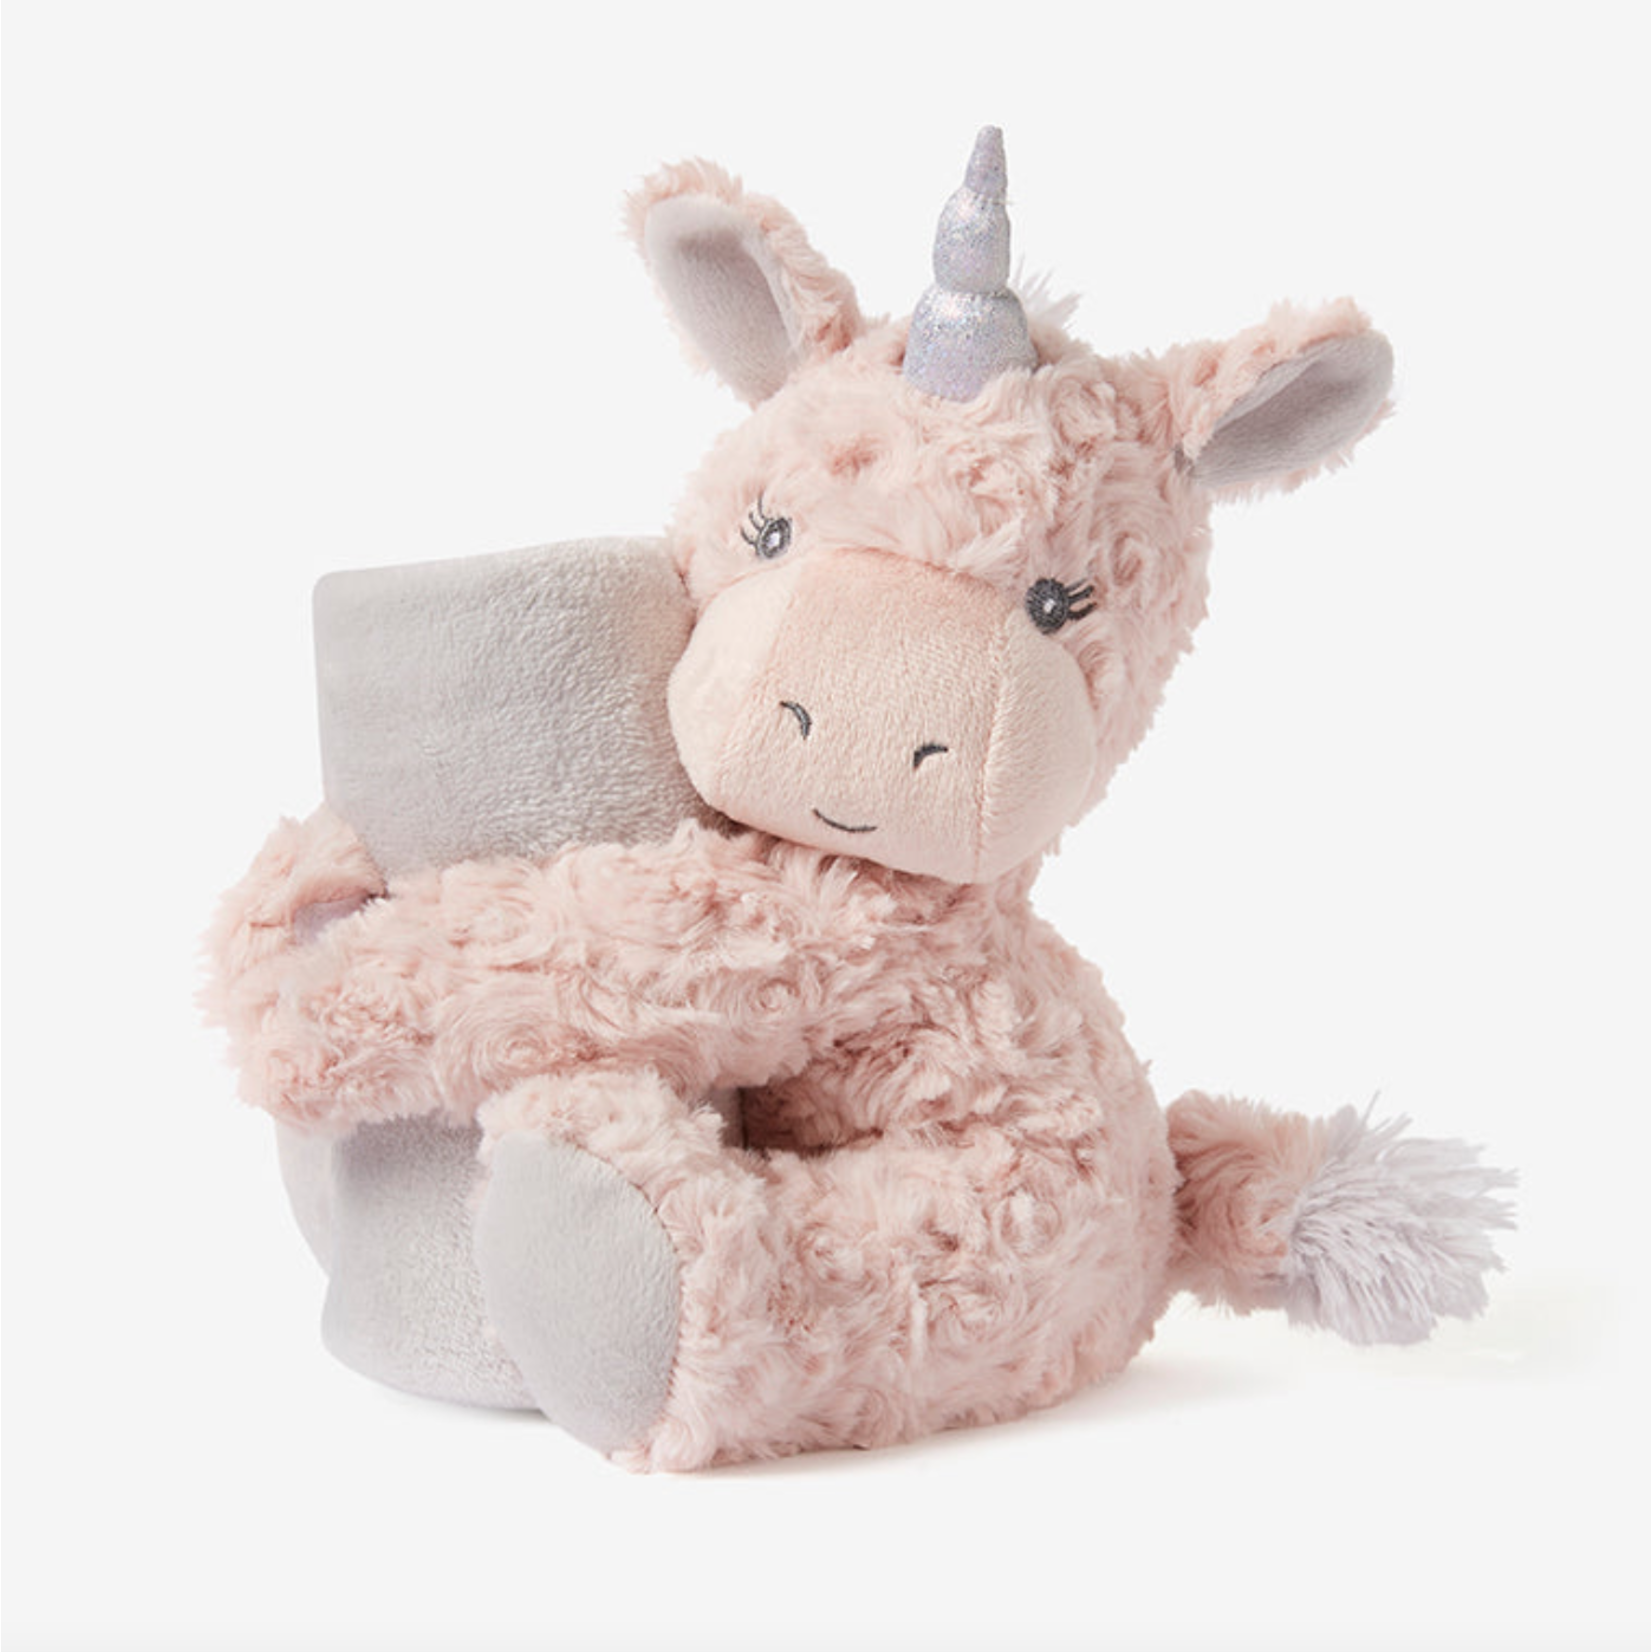 Naptime Huggie Plush Toy - Unicorn